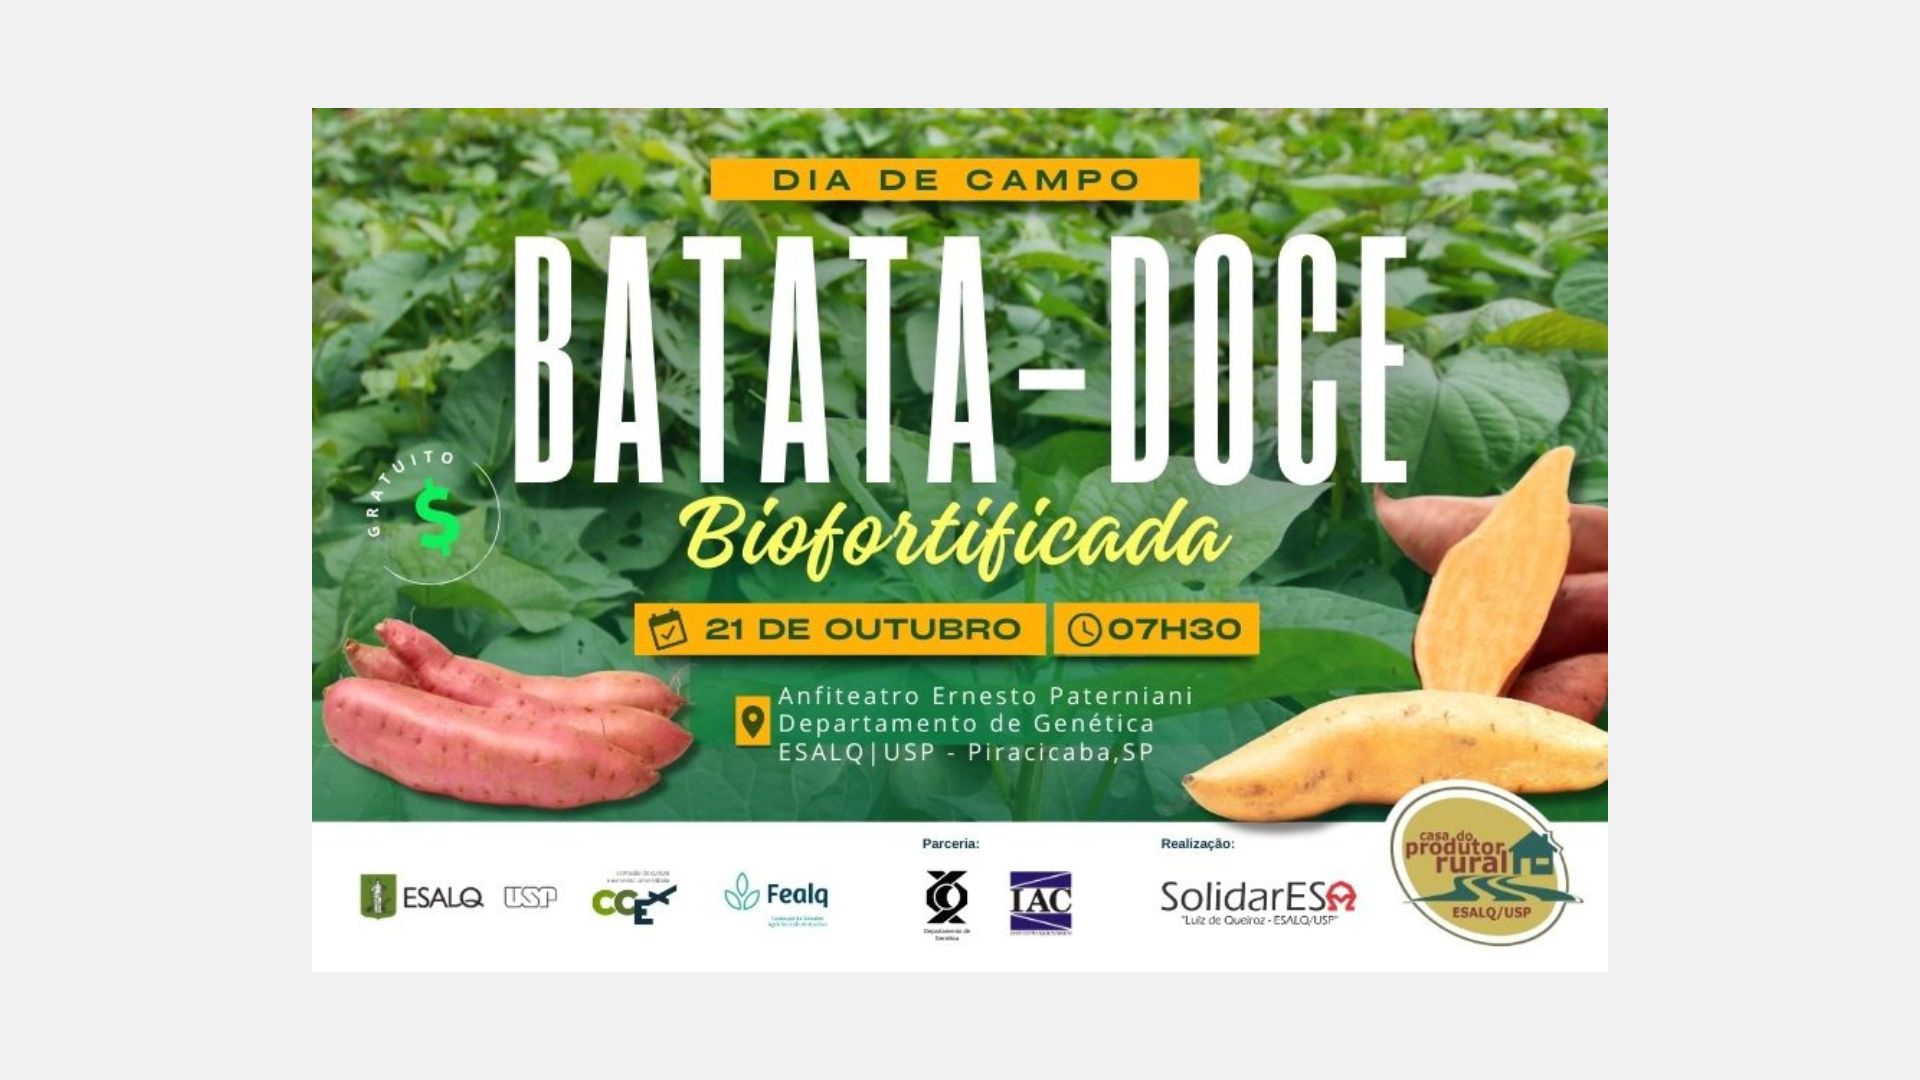 Cultivo de batata-doce biofortificada: prática permite o desenvolvimento de variedades mais nutritivas e produtivas